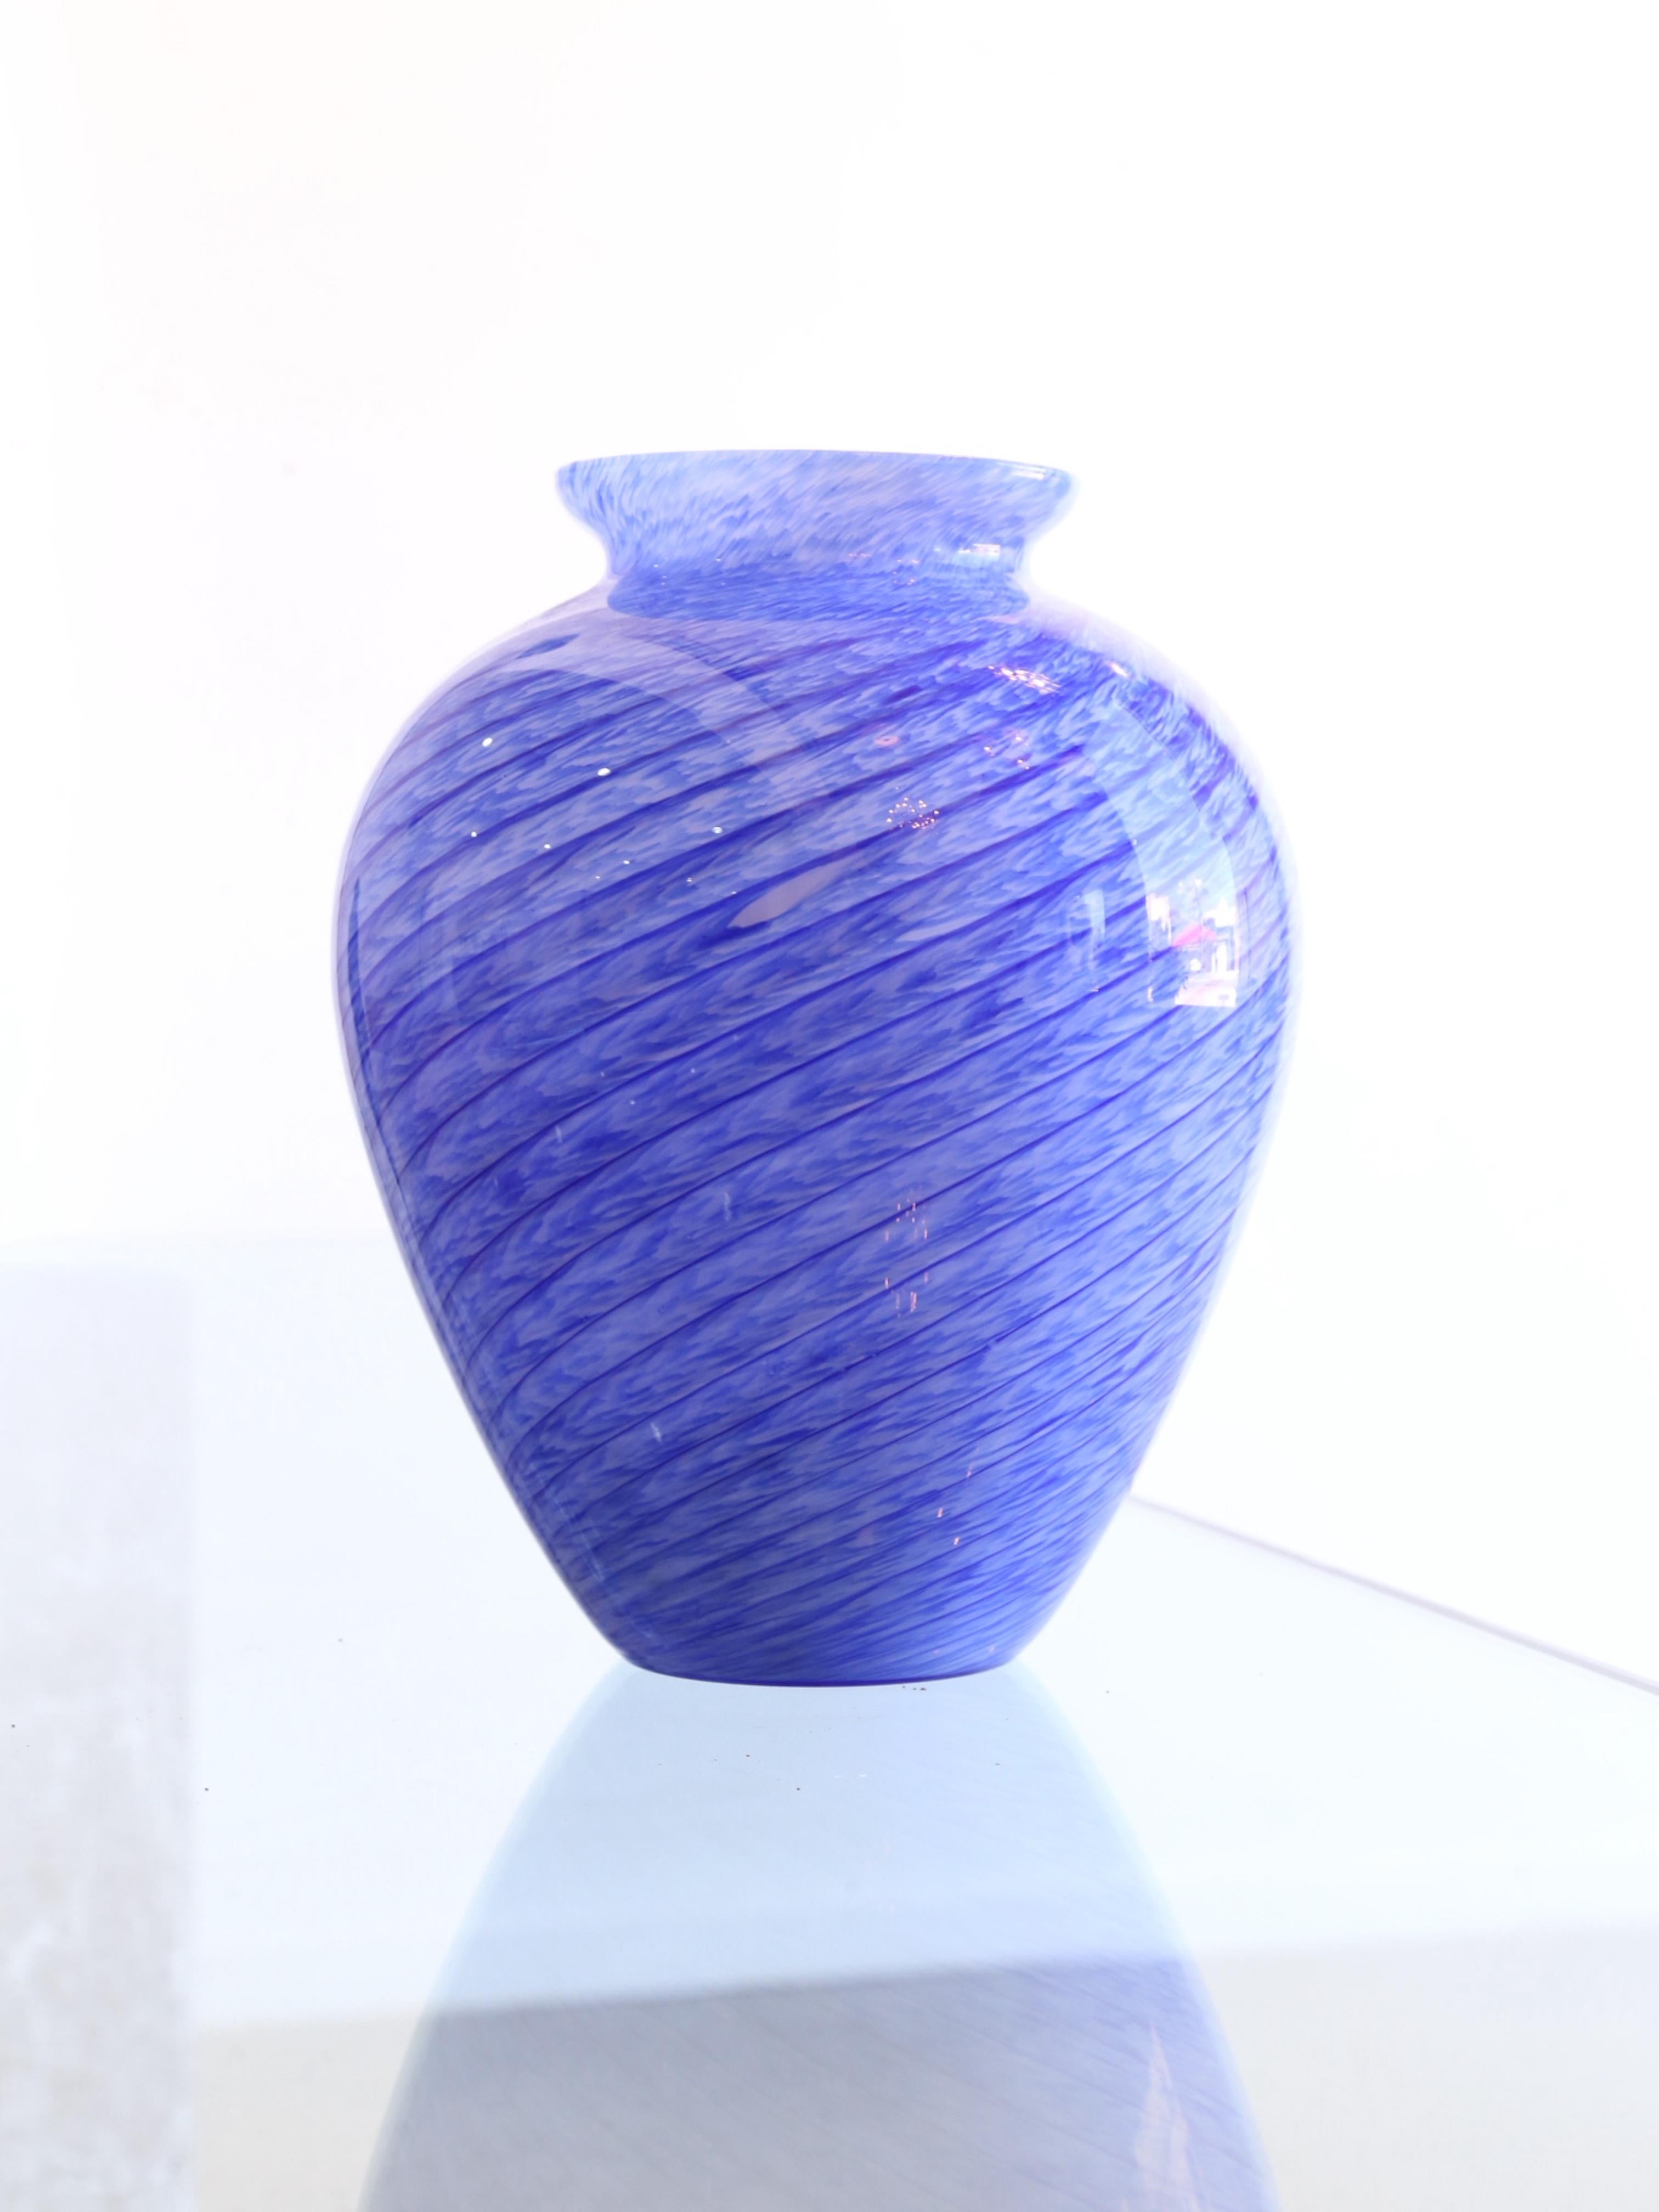 Einzigartige blau-weiß gestreifte Vase oder Tafelaufsatz aus Murano. 
In dieser Zeit standen die italienischen Glasmacher an der Spitze der modernistischen Bewegung im Glasdesign und schufen Stücke, die sowohl funktional als auch ästhetisch